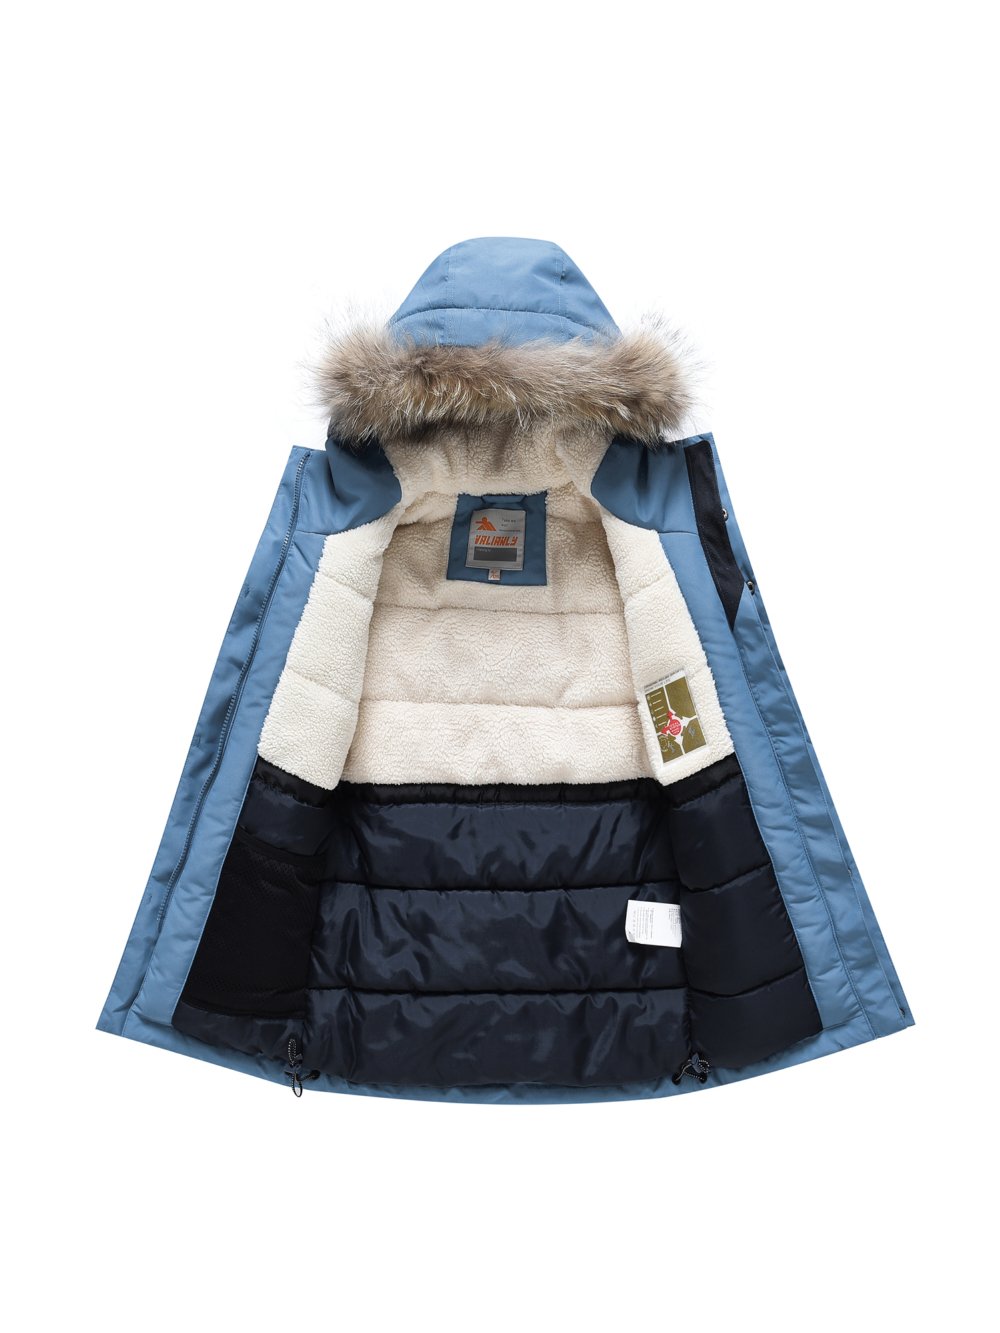 Купить куртку парку для мальчика оптом от производителя недорого в Москве 9339S 1